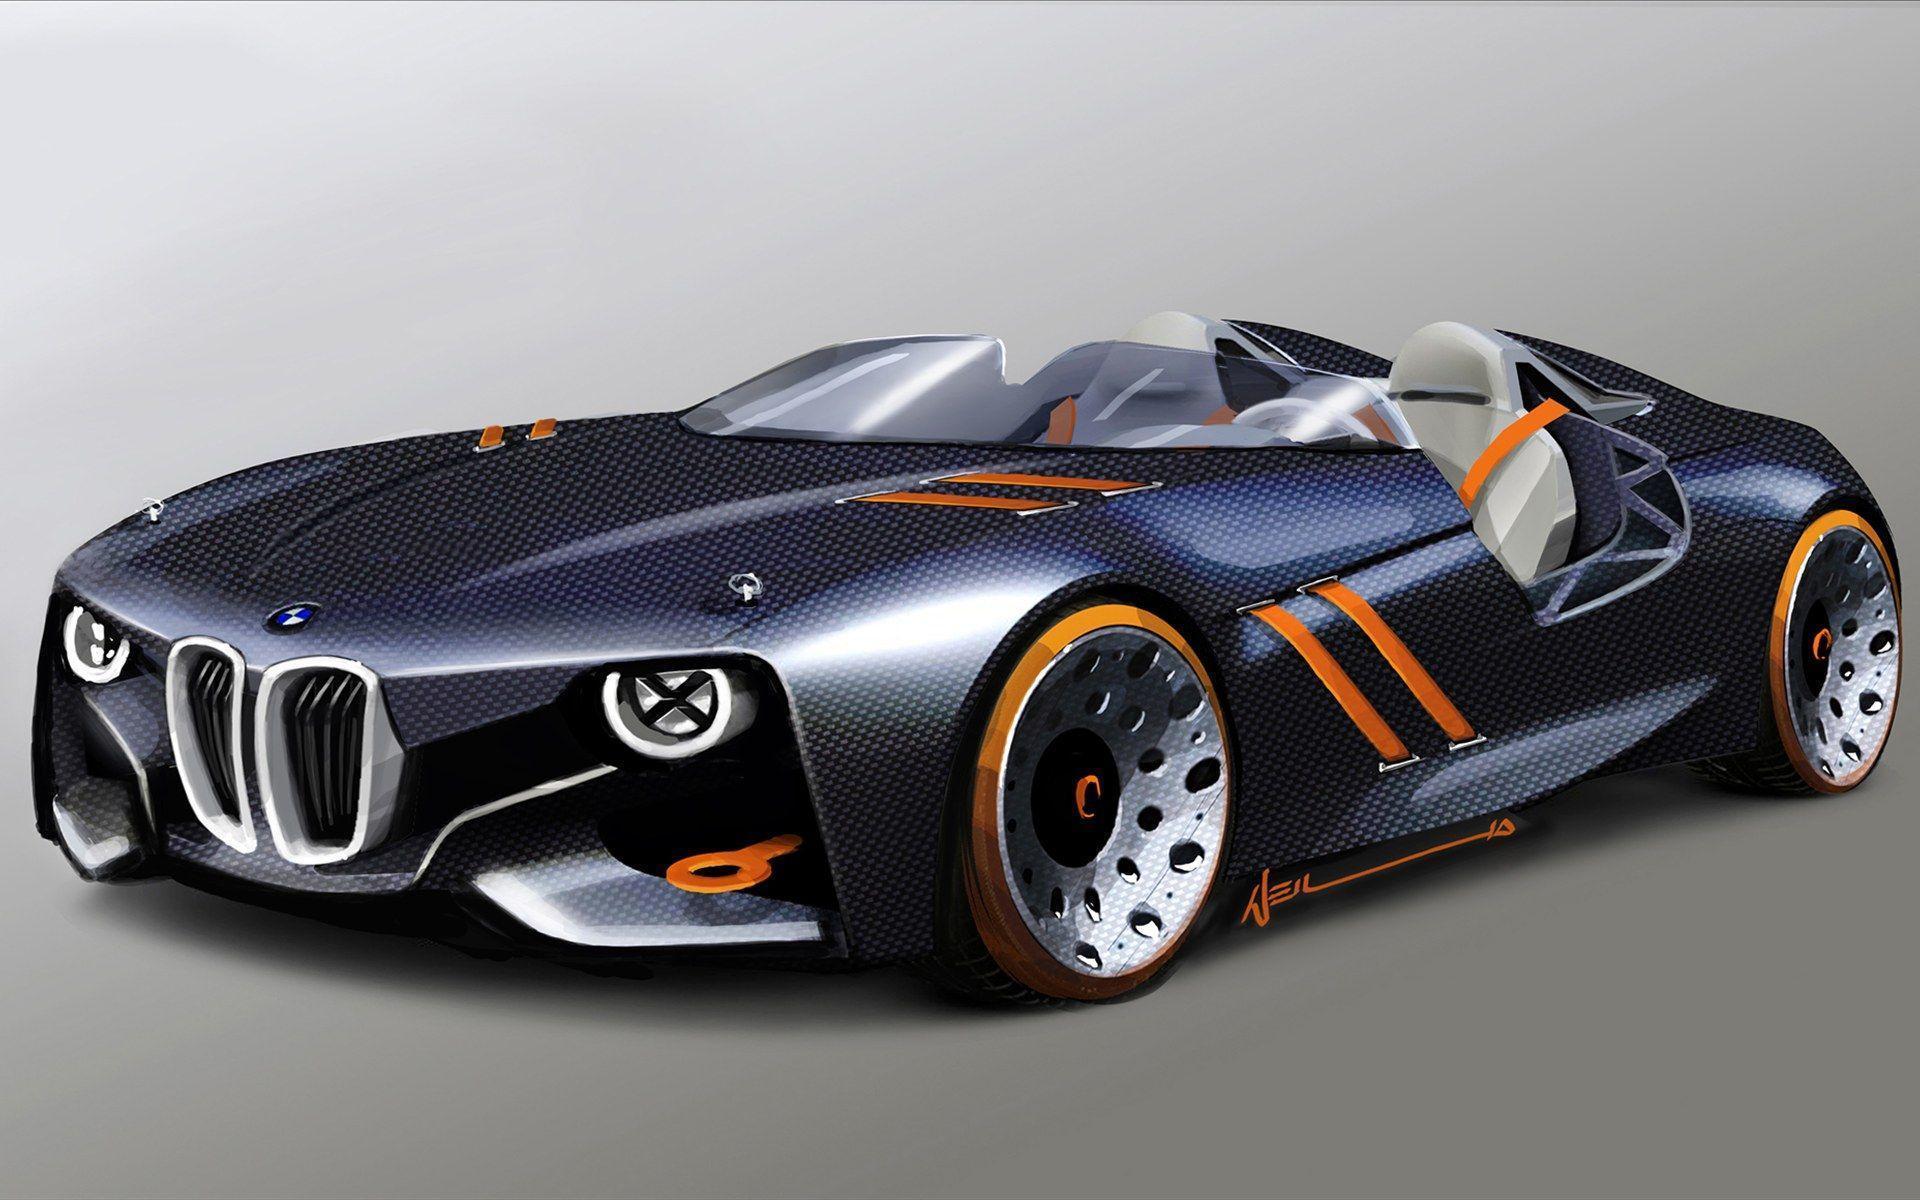 Top HD Concept Car Wallpaper. Cars HD.67 KB